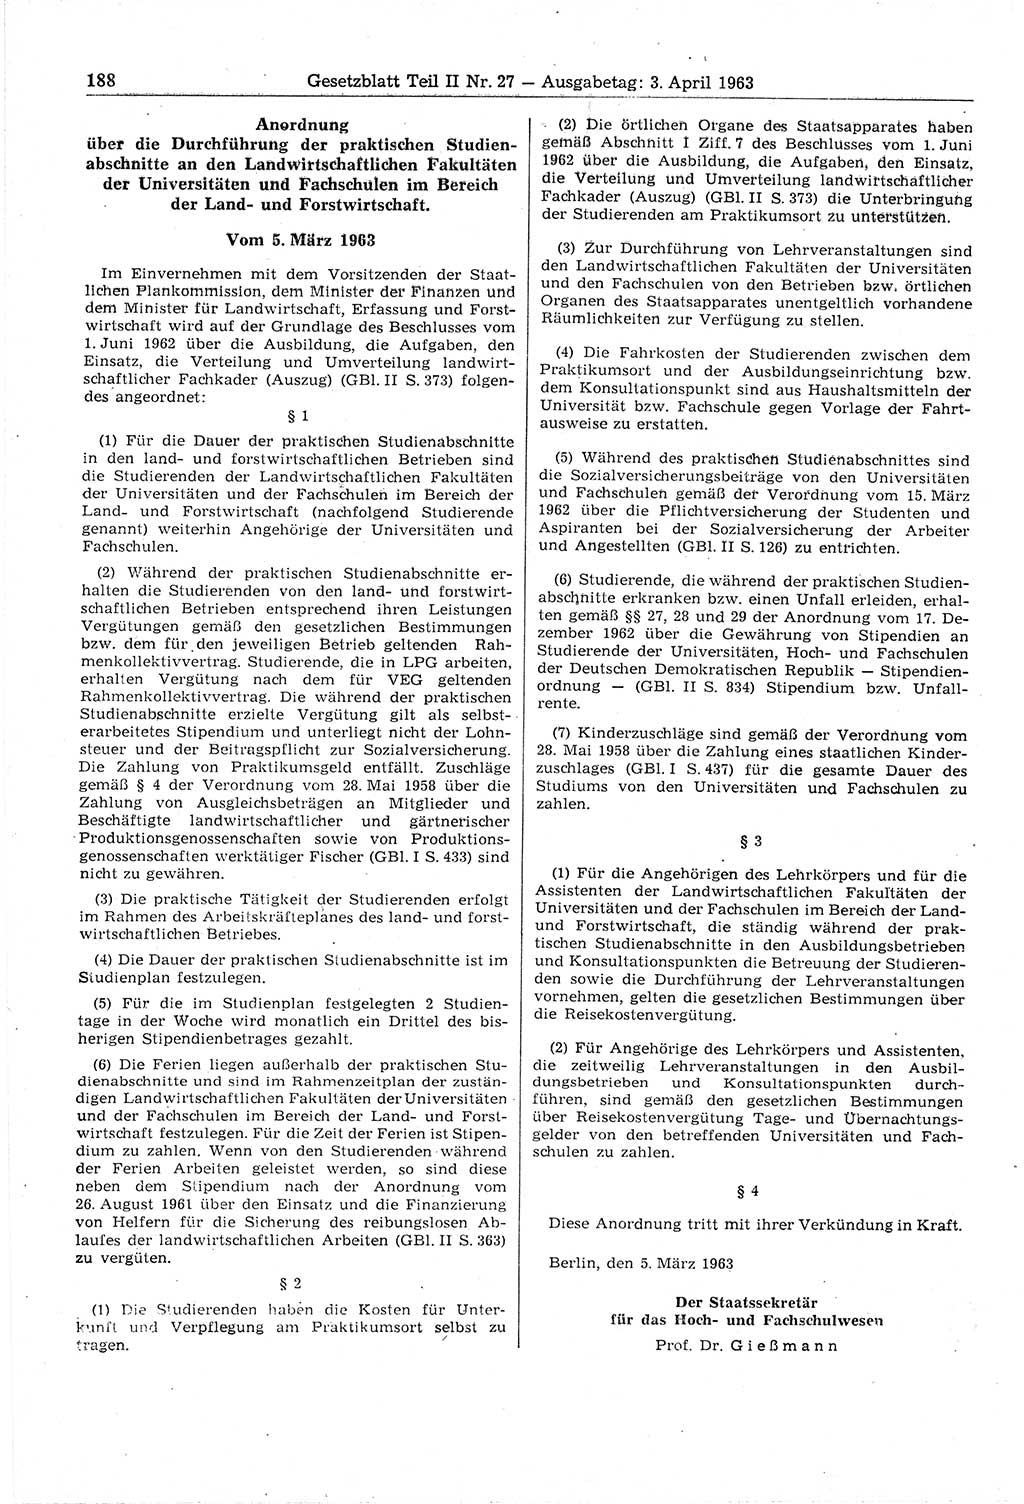 Gesetzblatt (GBl.) der Deutschen Demokratischen Republik (DDR) Teil ⅠⅠ 1963, Seite 188 (GBl. DDR ⅠⅠ 1963, S. 188)